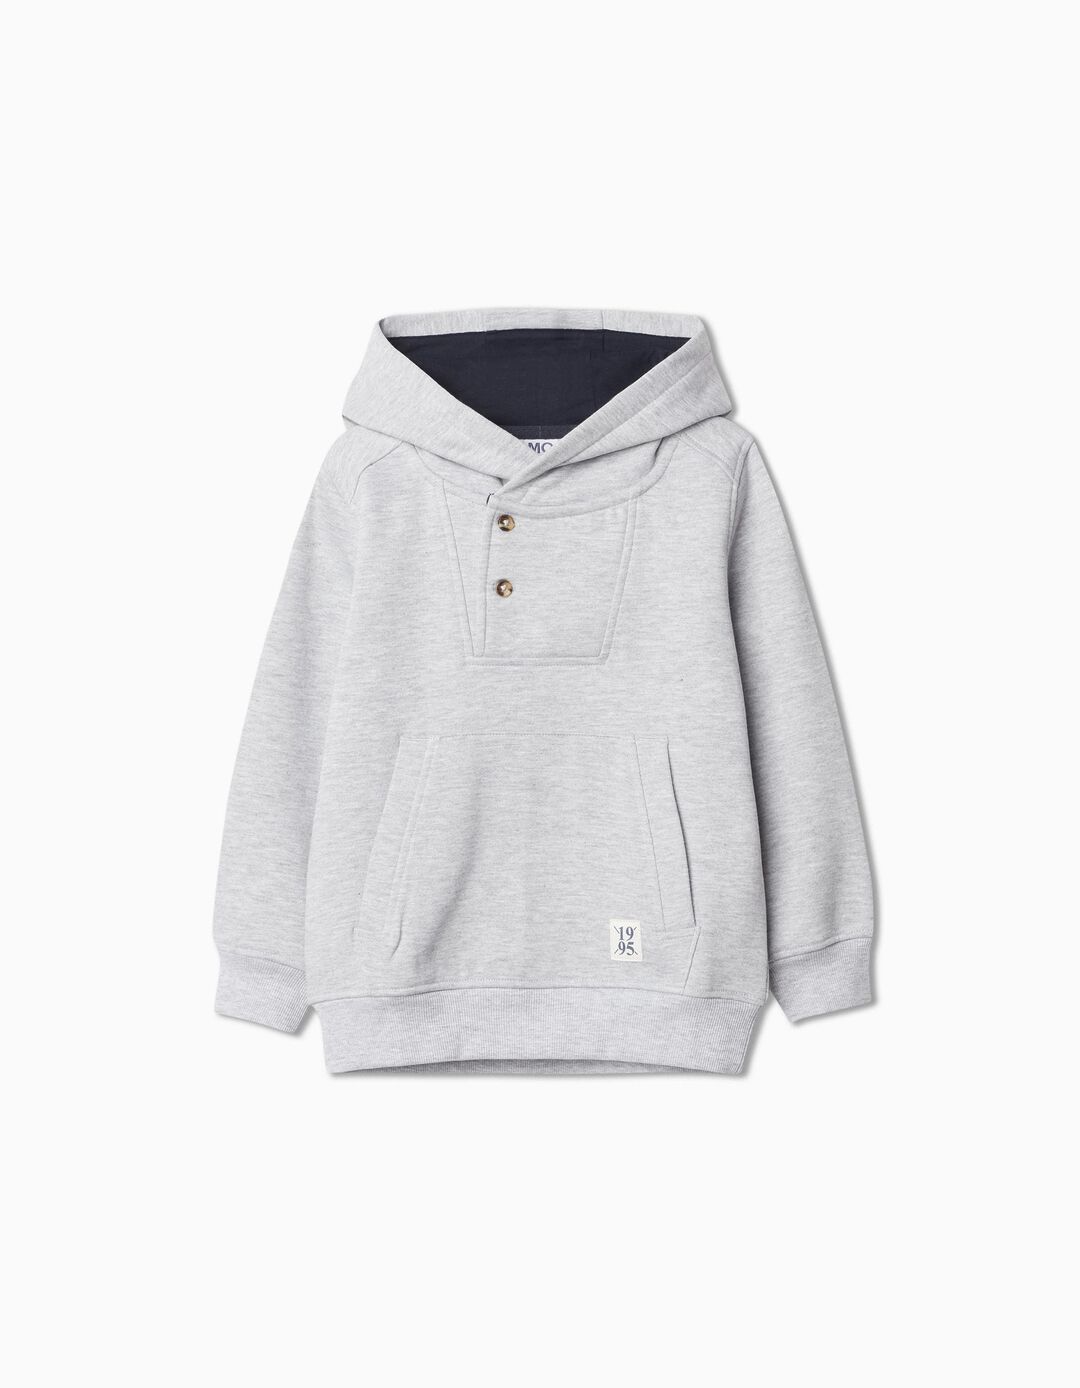 Fleece Hooded Sweatshirt, Boy, Light Gray